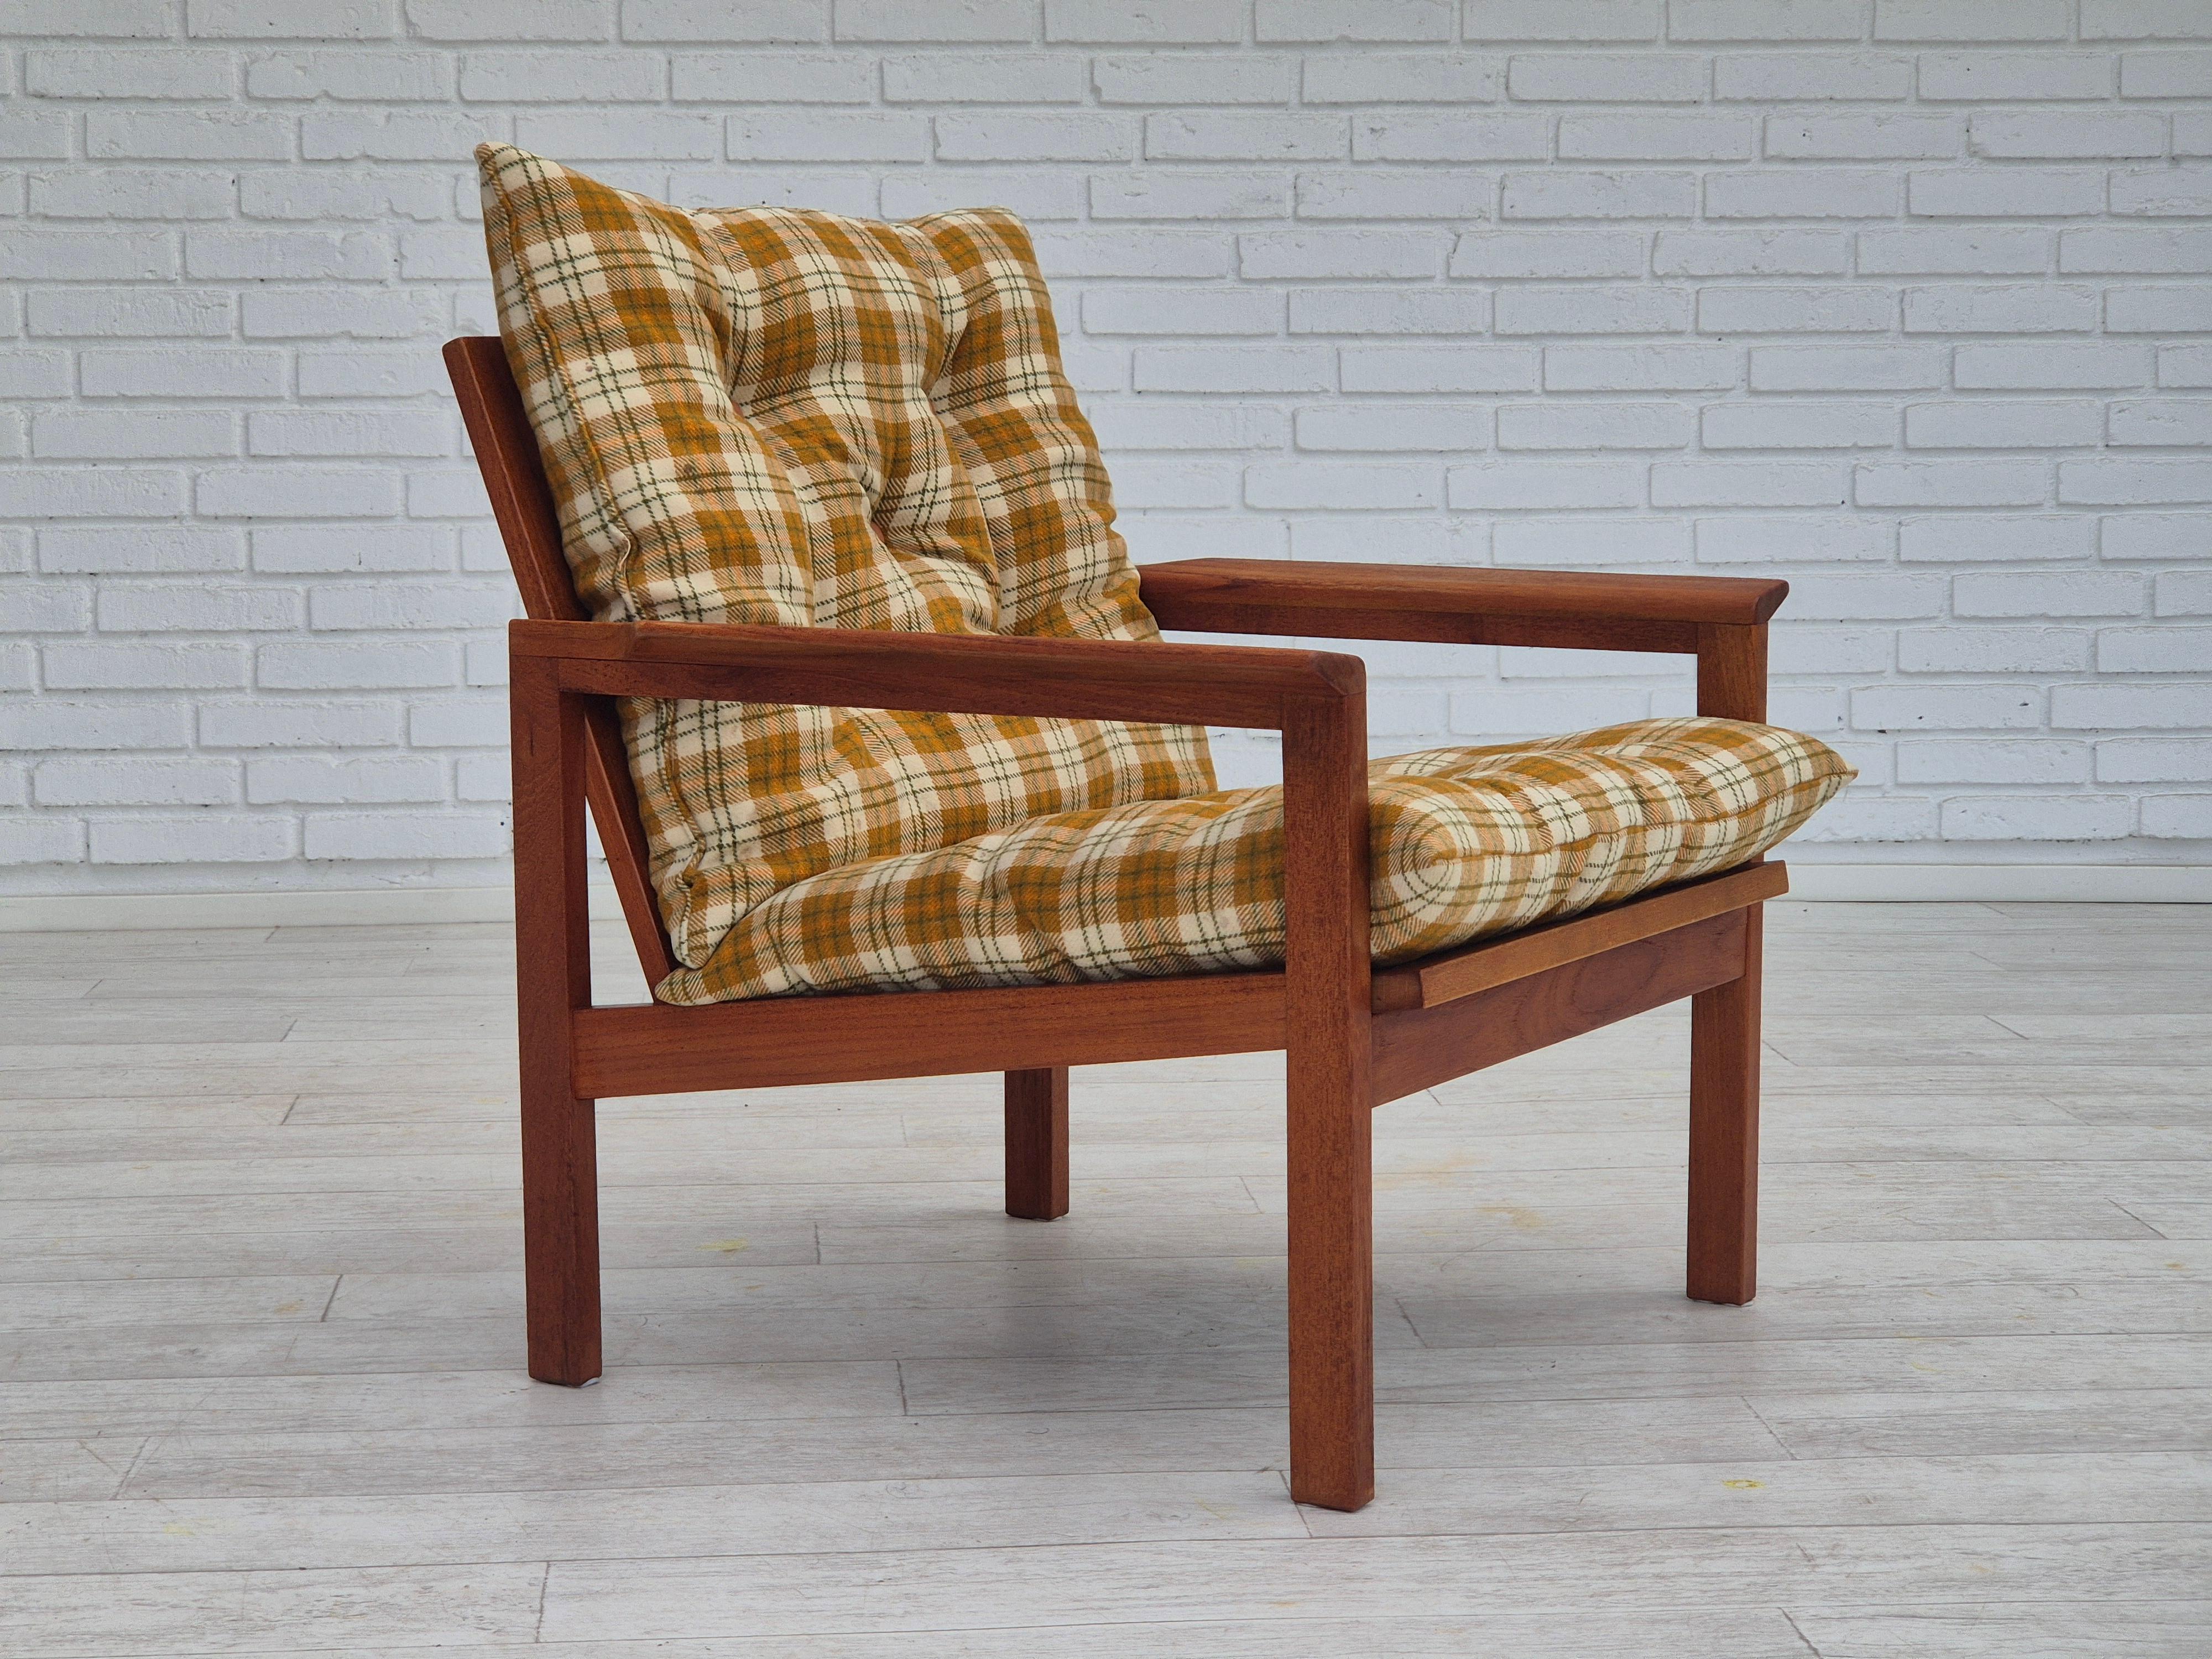 Chaise longue danoise des années 1970 en très bon état d'origine : pas d'odeur ni de tache. Meuble multicolore en tissu de laine, bois de teck. Boutons en cuir brun clair. Construction en bois renouvelée. Fabriqué par un fabricant de meubles danois